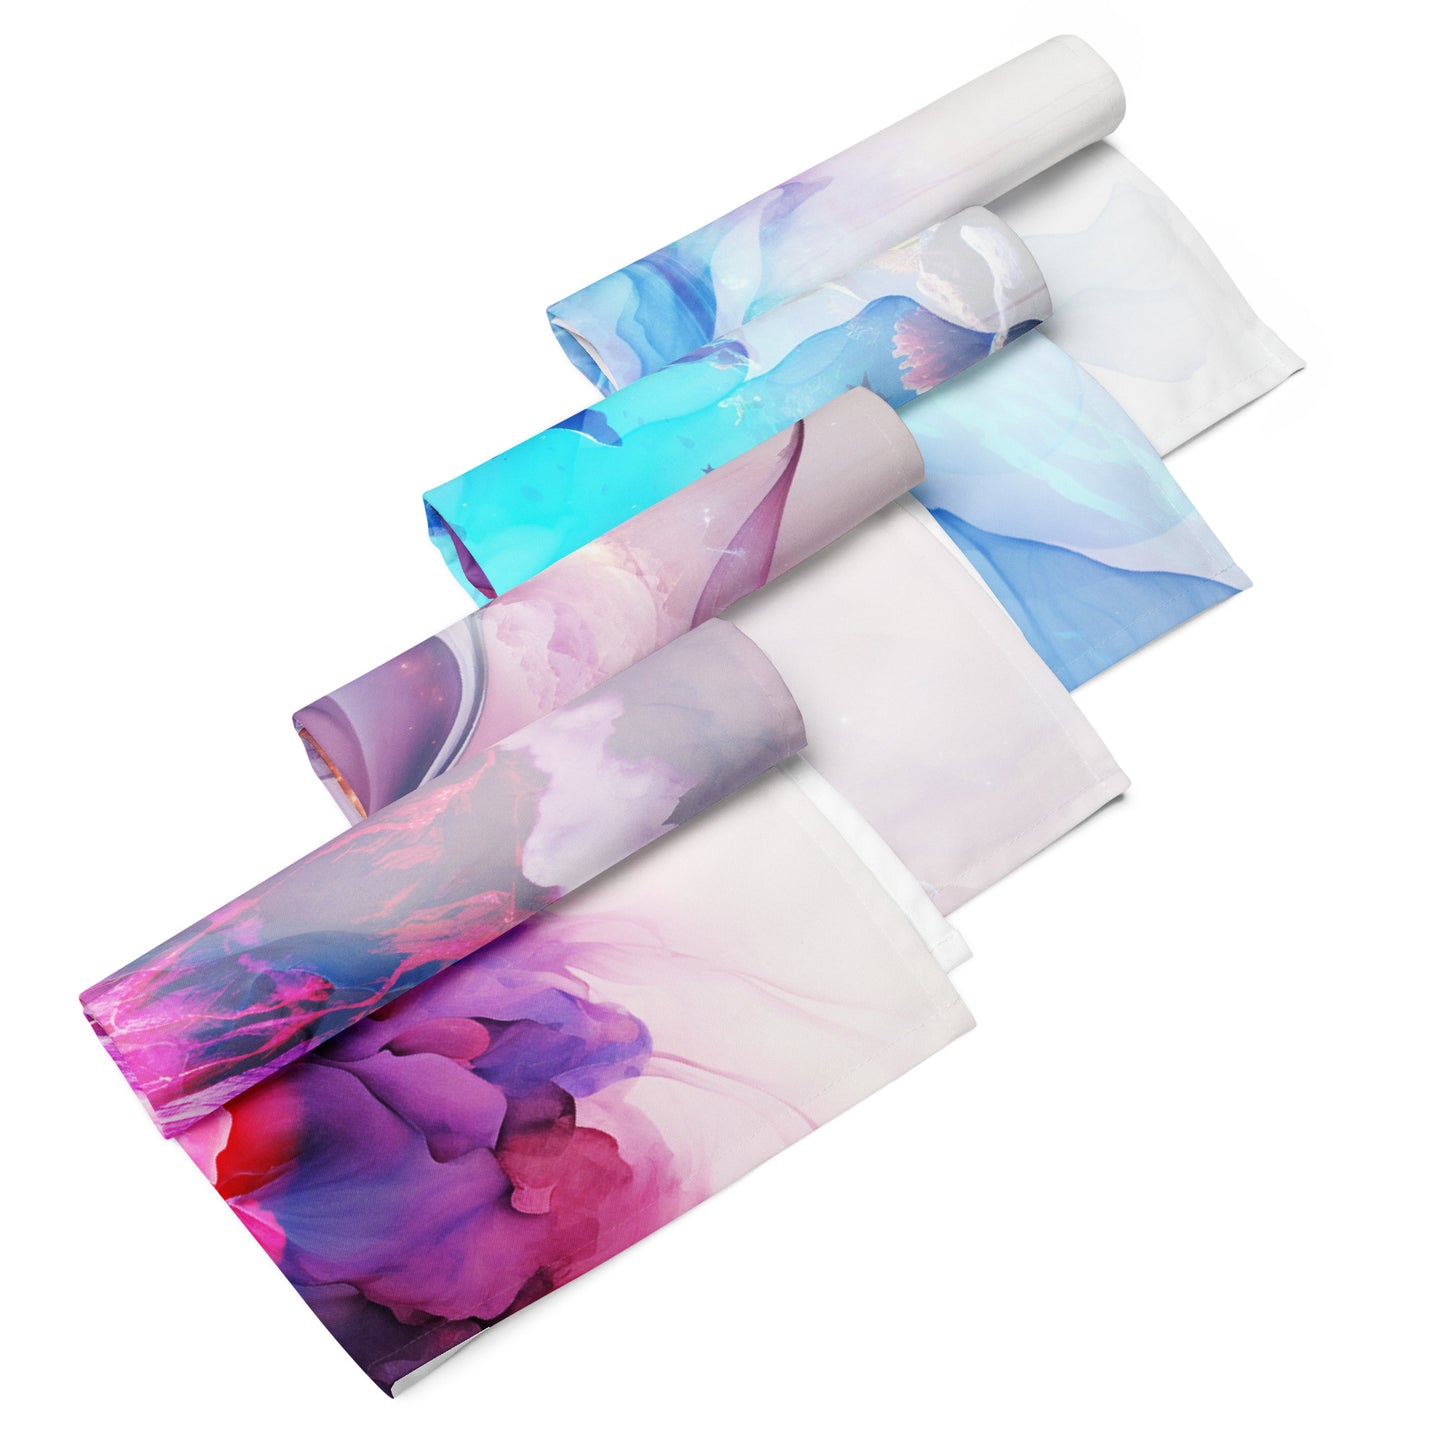 Vivid Dreams Calm Cloth Napkin Set - Dreamscape Collection by Neduz Designs